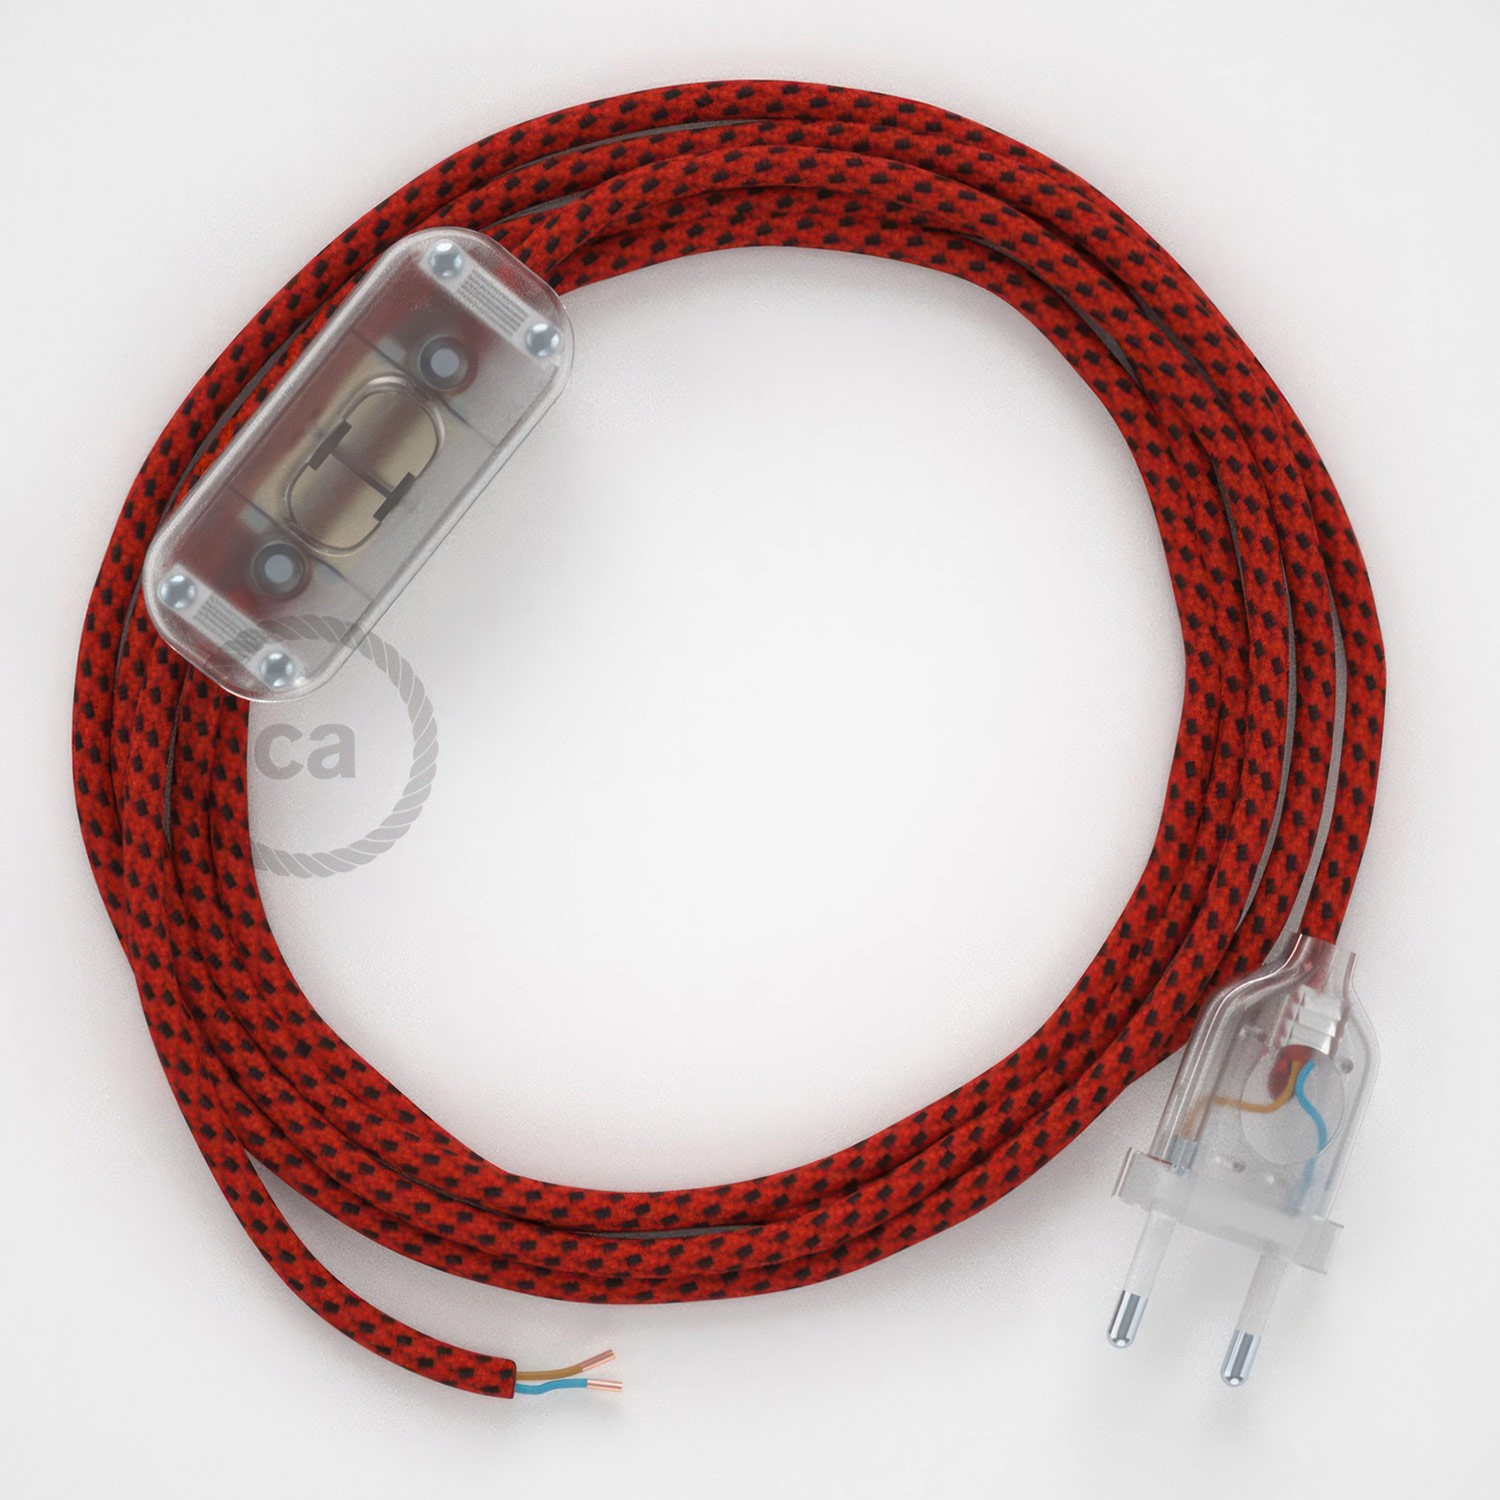 Cableado para lámpara, cable RT94 Efecto Seda Red Devil 1,8m. Elige tu el color de la clavija y del interruptor!